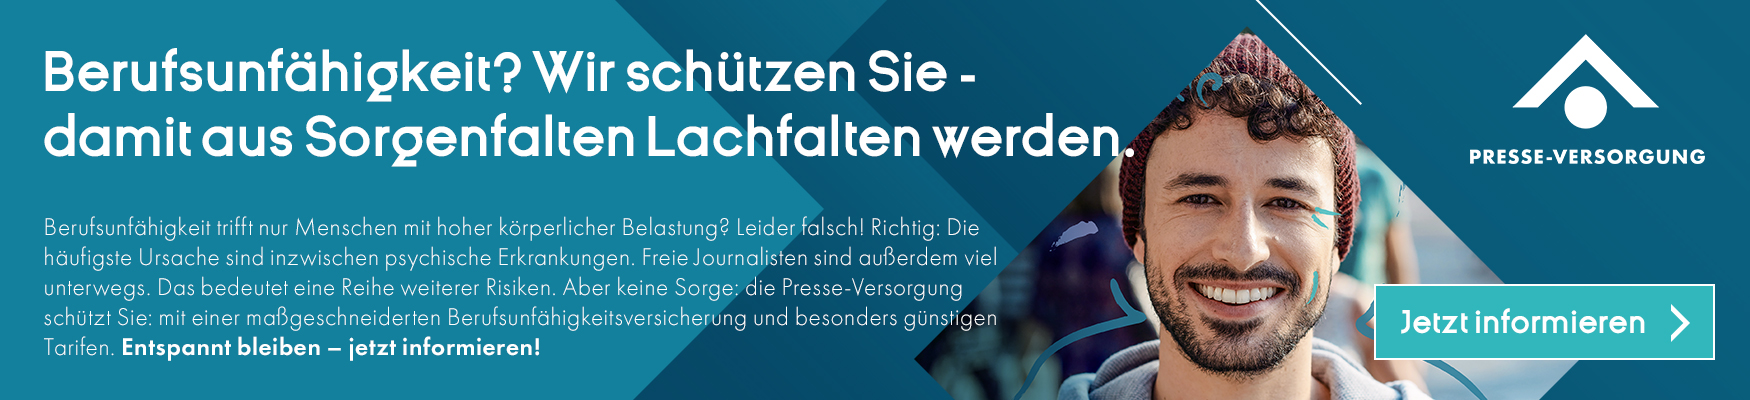 Anzeige der Presseversorgung GmbH